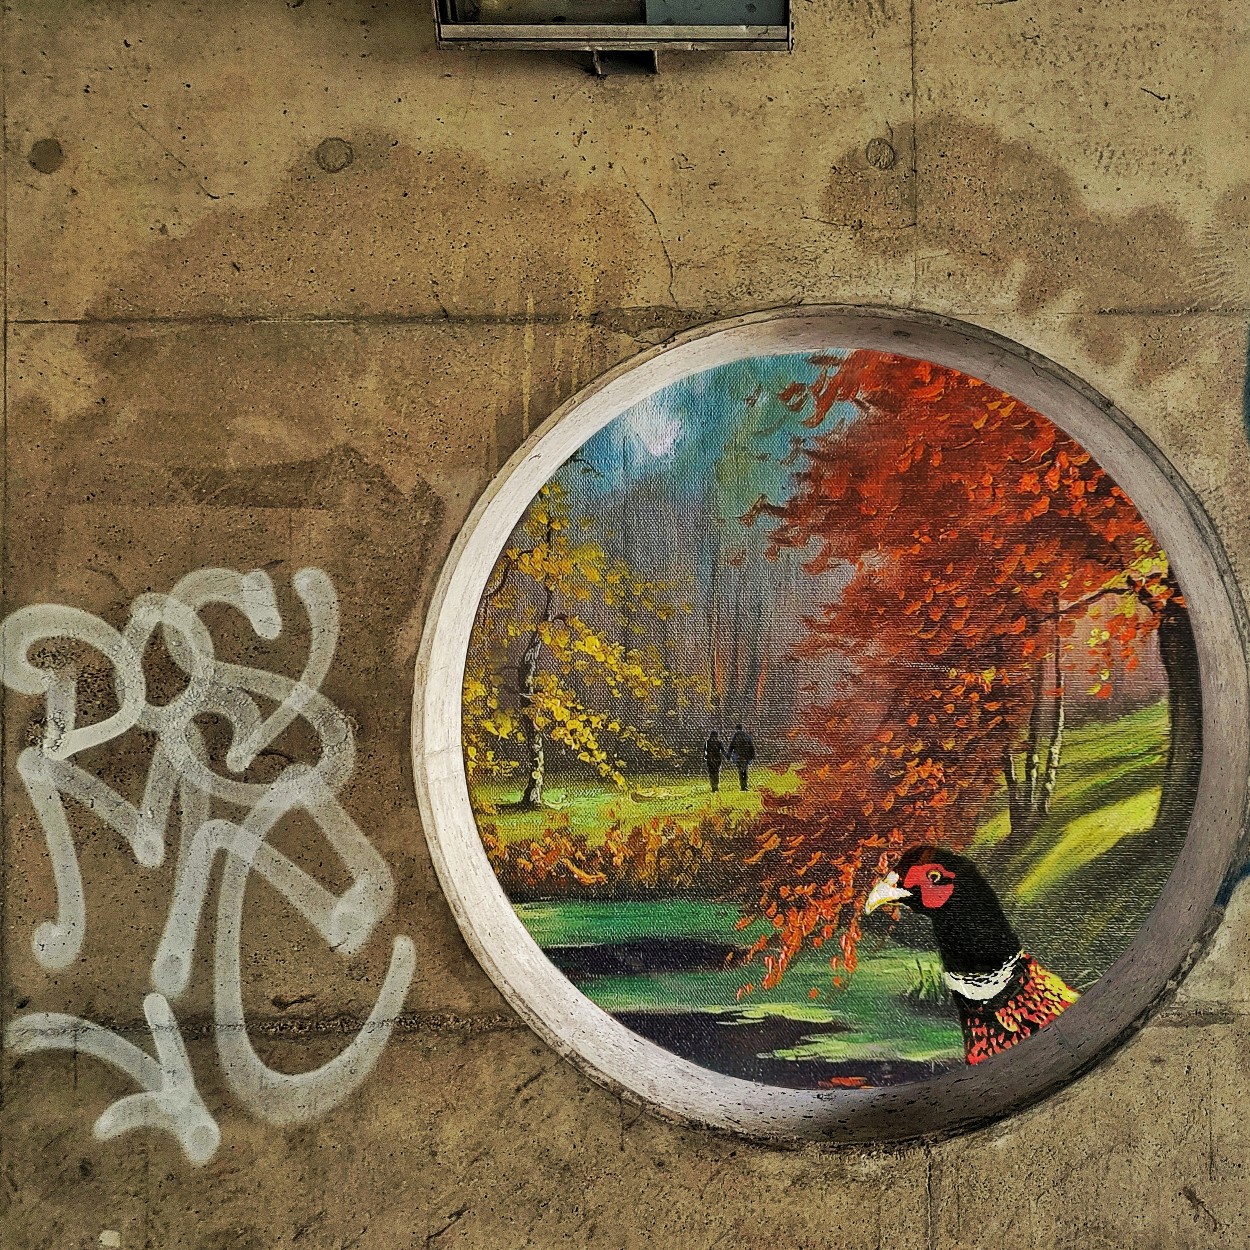 Popart werk van een muur met een rond gat waarin twee mensen het paradijs intrekken, gadegeslagen door een fazant.